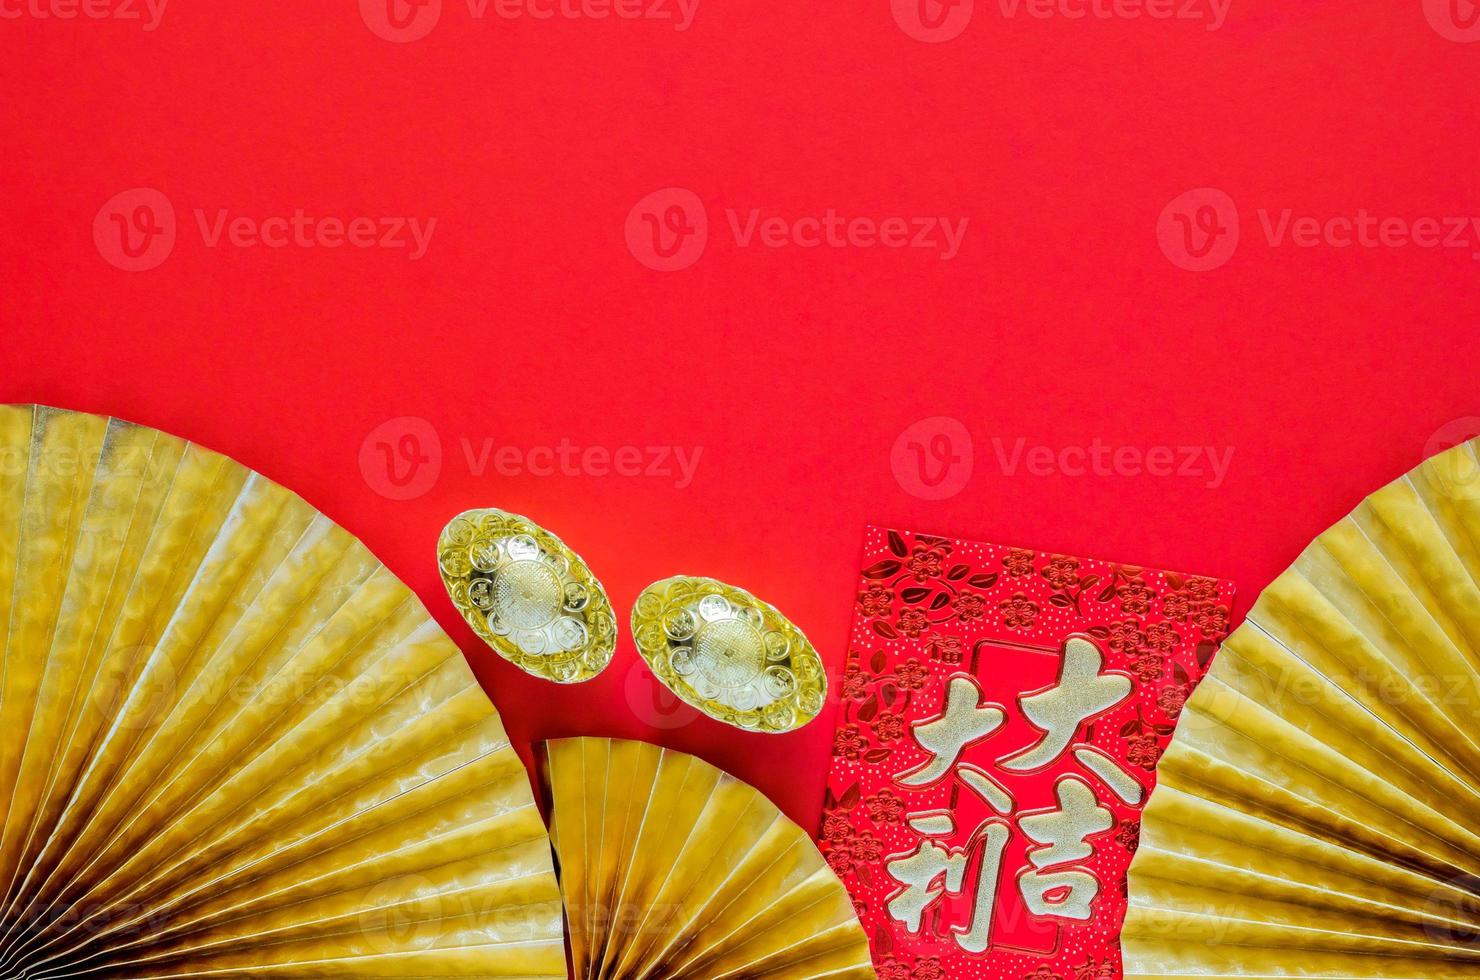 conceito de ano novo chinês com pacotes de envelope vermelho ou palavra ang bao significa auspício e palavra de lingotes significa riqueza em fundo vermelho com leques orientais dourados. foto